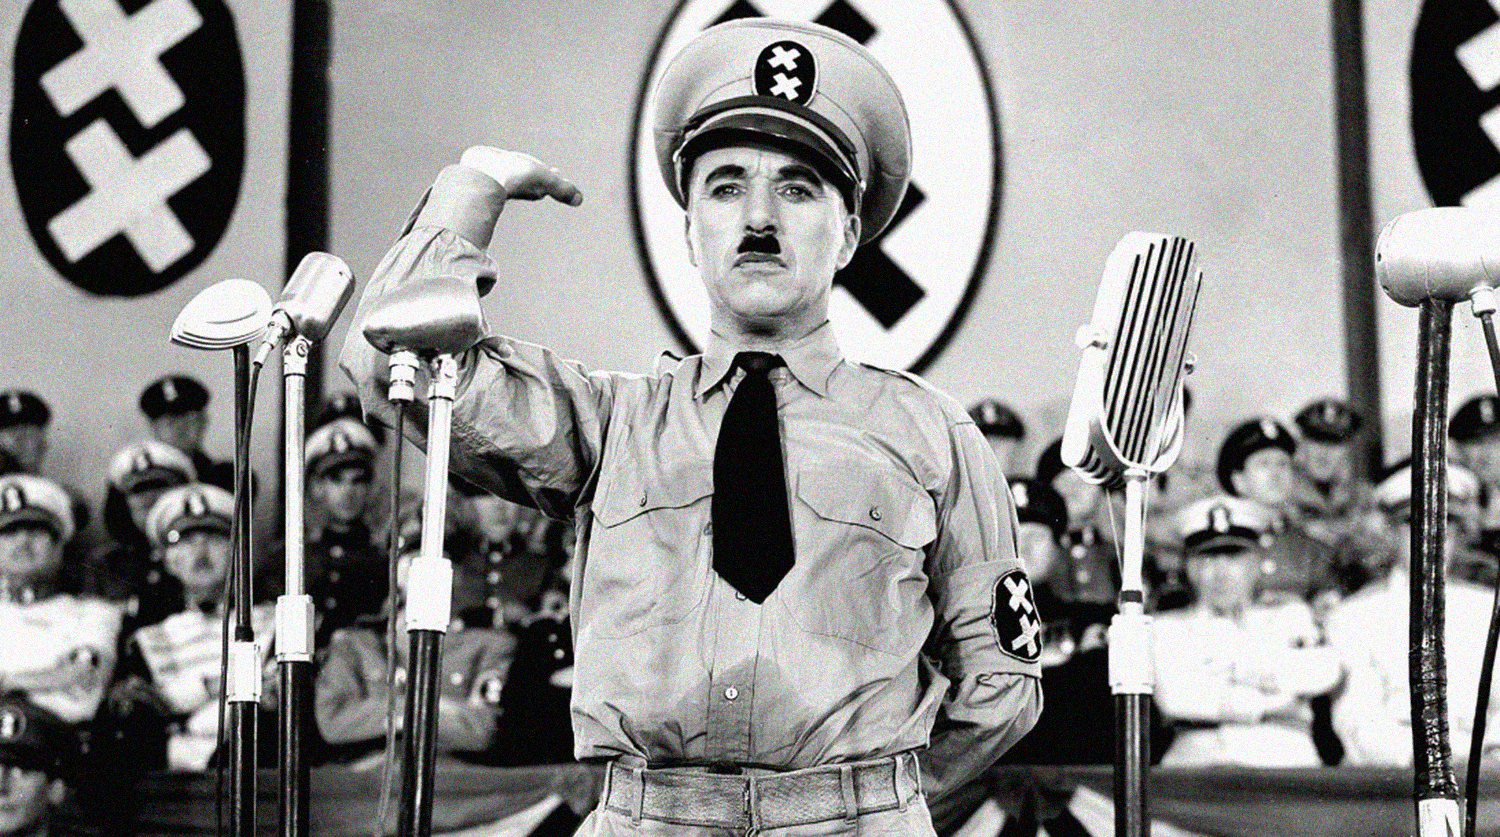 Гитлер и бродяга: главные фильмы Чарли Чаплина история кино,кино,киноактеры,кинохроника,моровой кинематограф,художественное кино